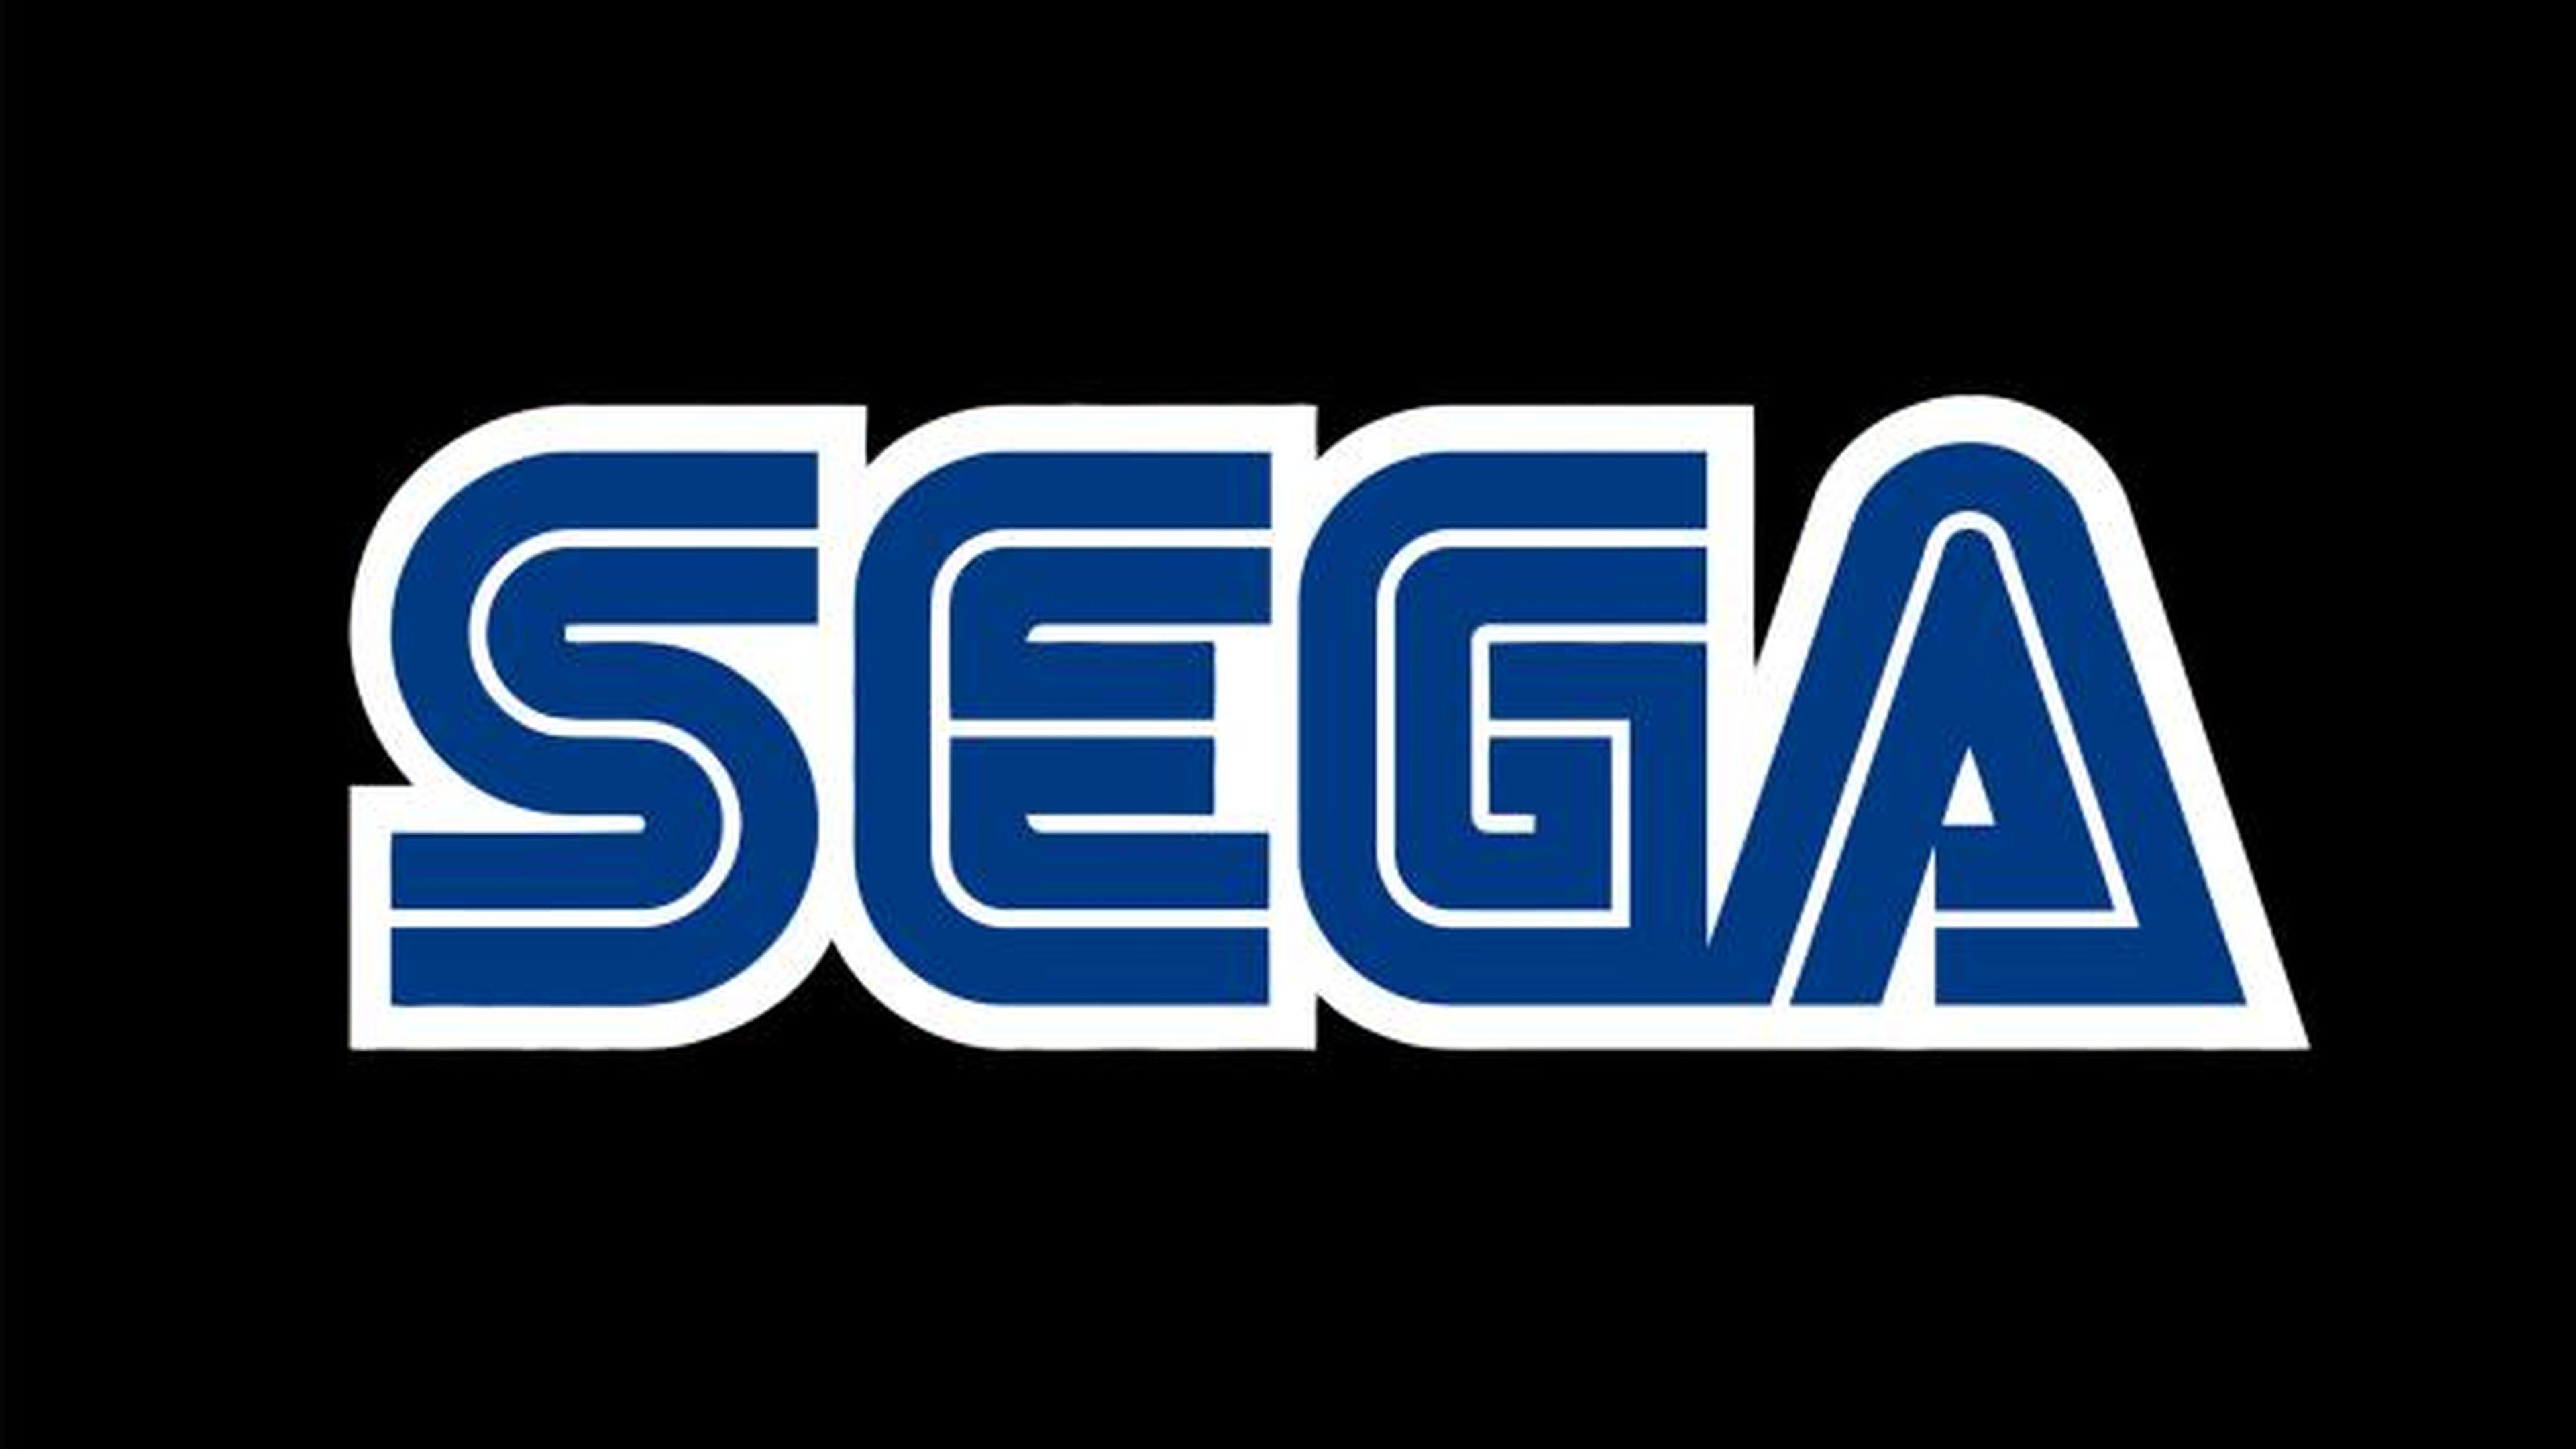 SEGA prepara series y películas de Golden Axe, Altered Beast y Virtua Fighter